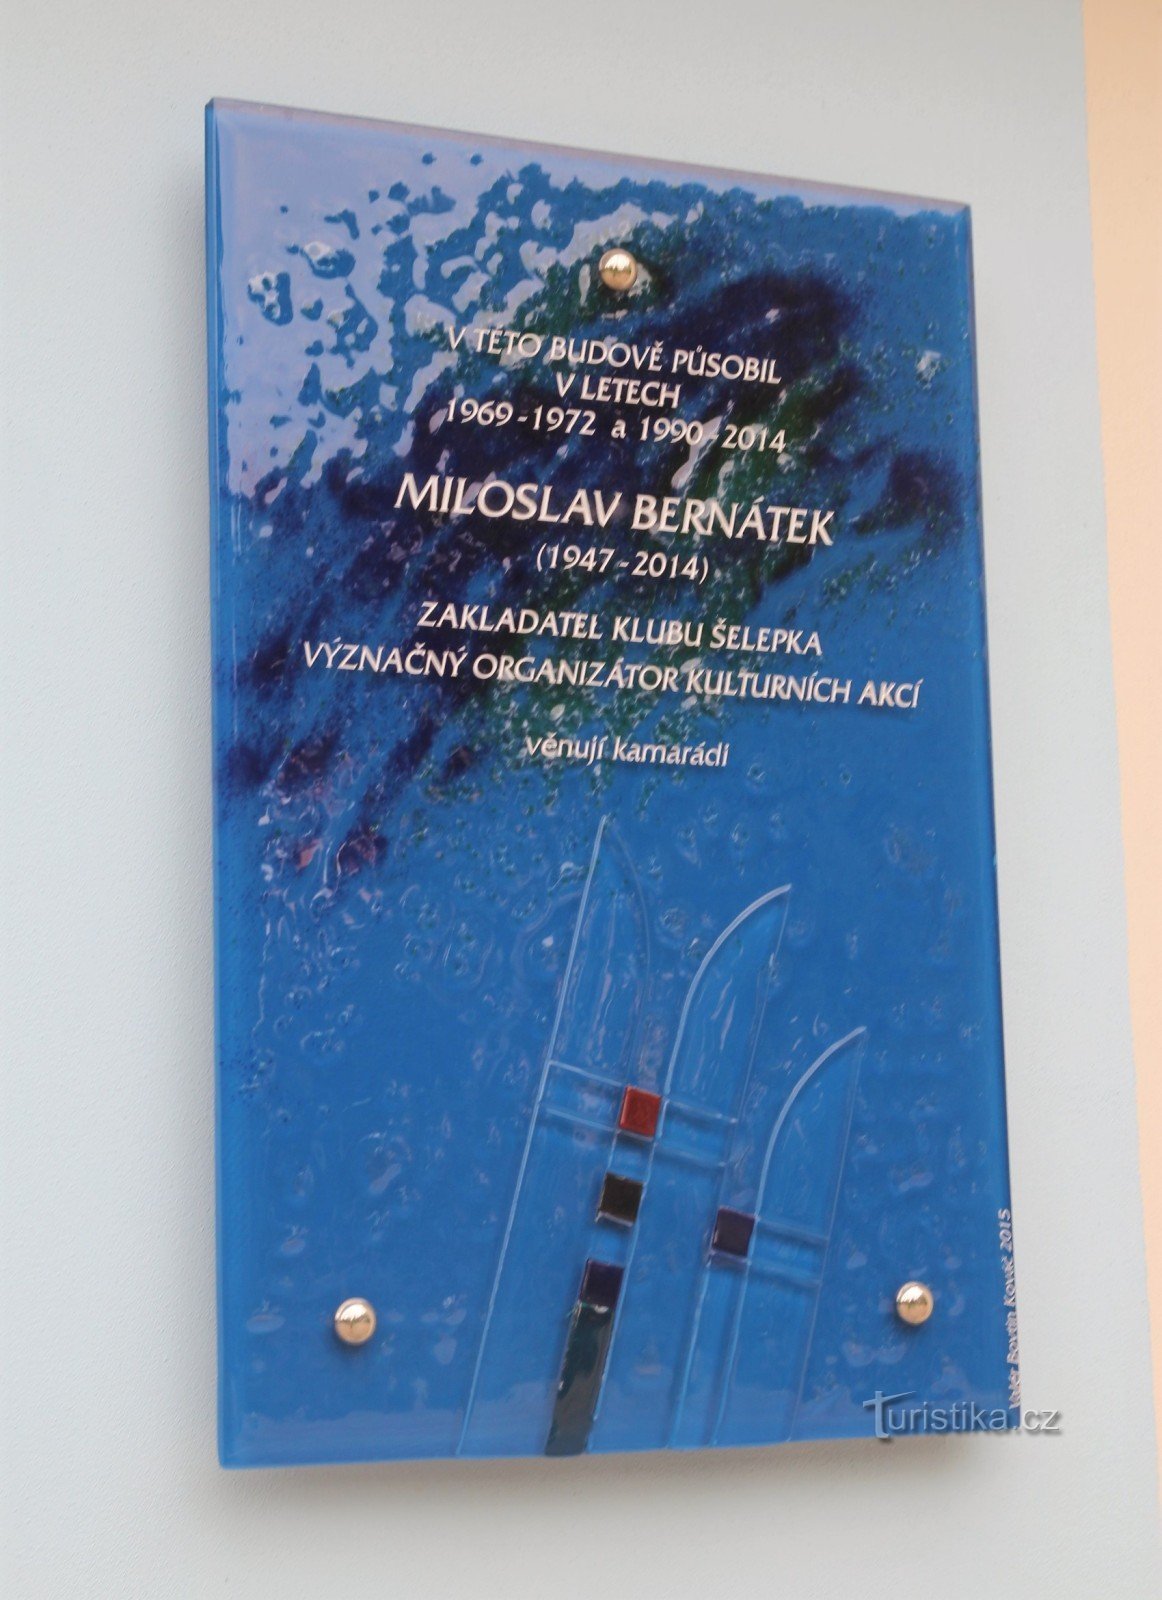 Brno-Ponava - placa conmemorativa de Miloš Bernátek